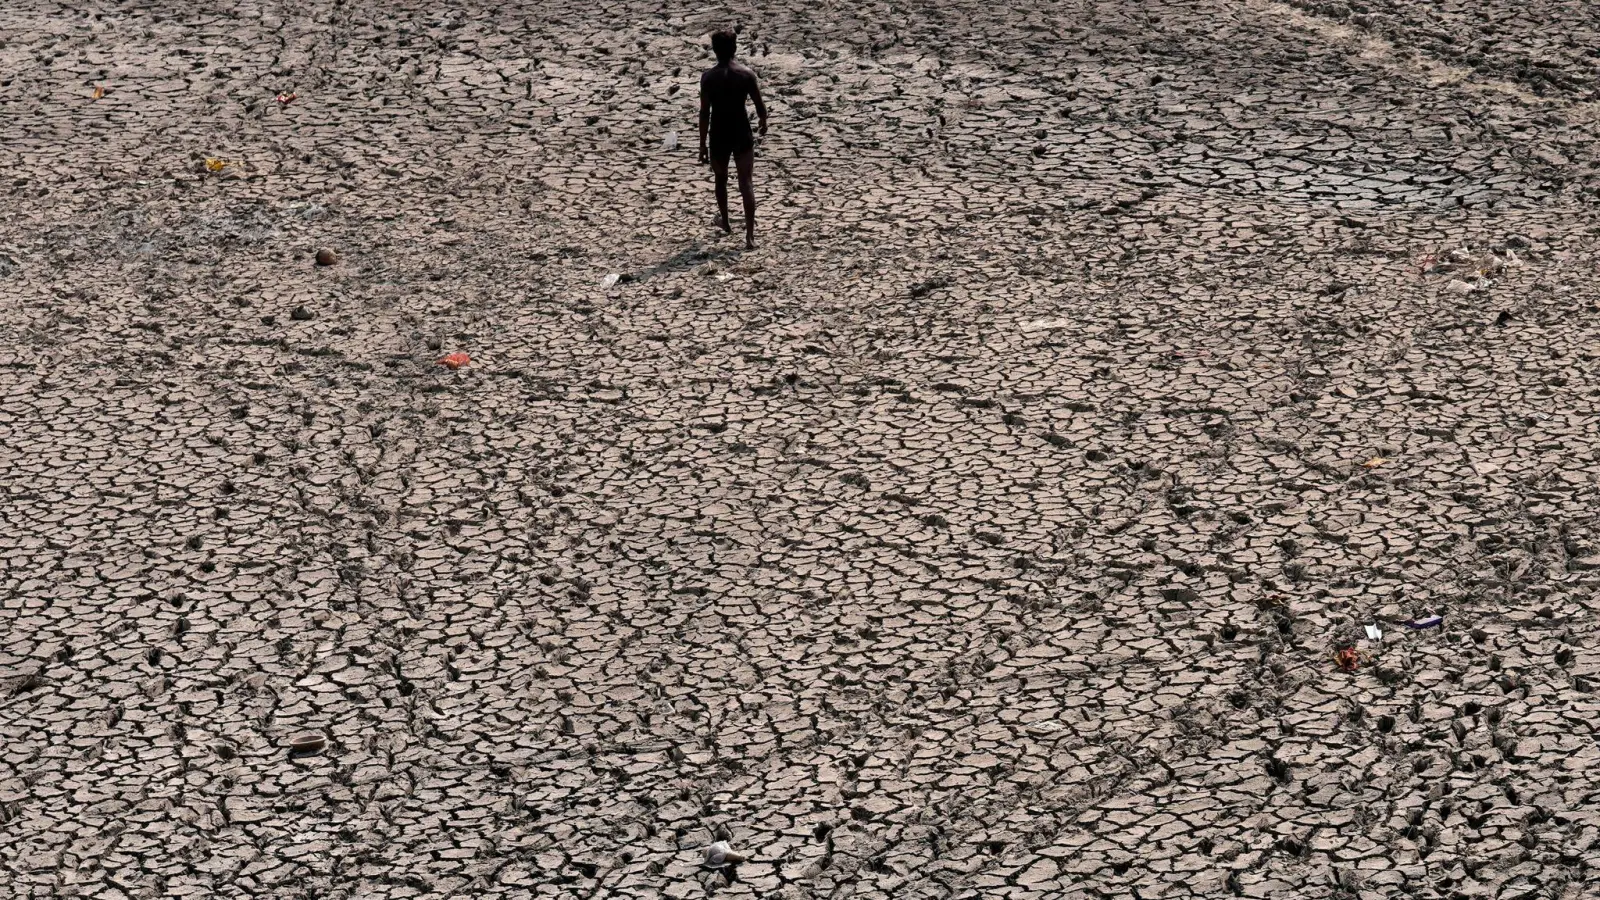 Ausgetrocknetes Flussbett in Indien. Die globale Erwärmung nimt laut einem Bericht der Weltwetterorganisation weiter zu. (Foto: Manish Swarup/AP/dpa)